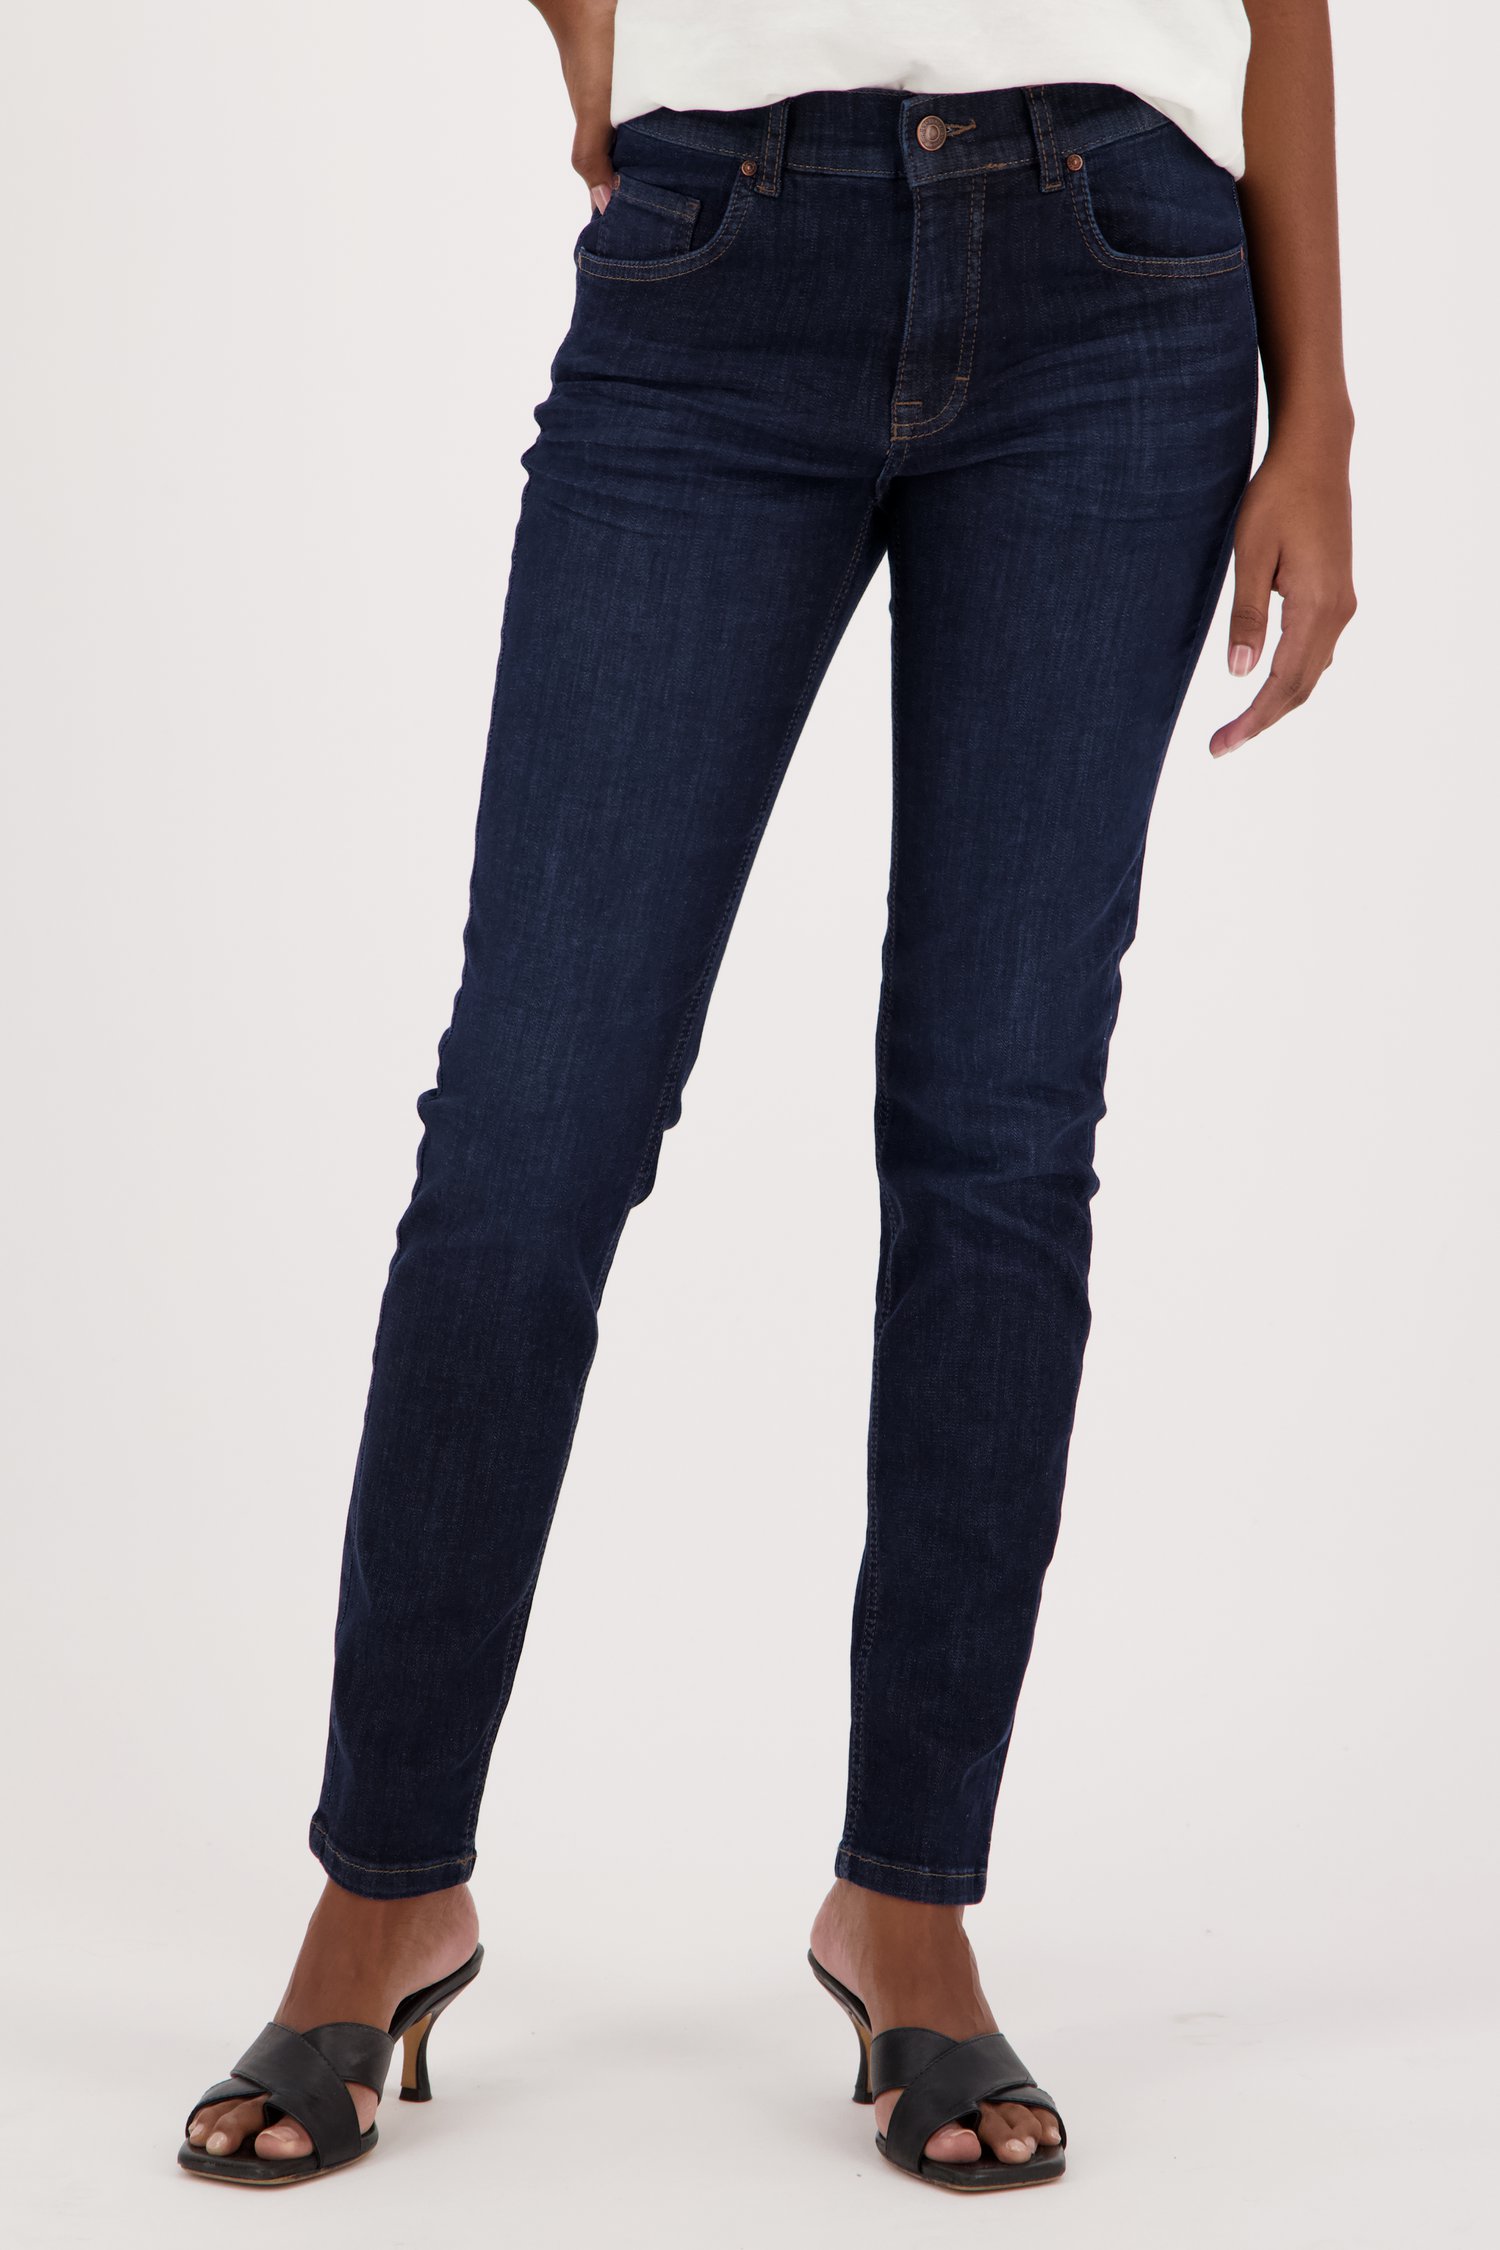 is er rem Ontleden Donkerblauwe jeans - skinny fit van Angels | 4963063 | e5